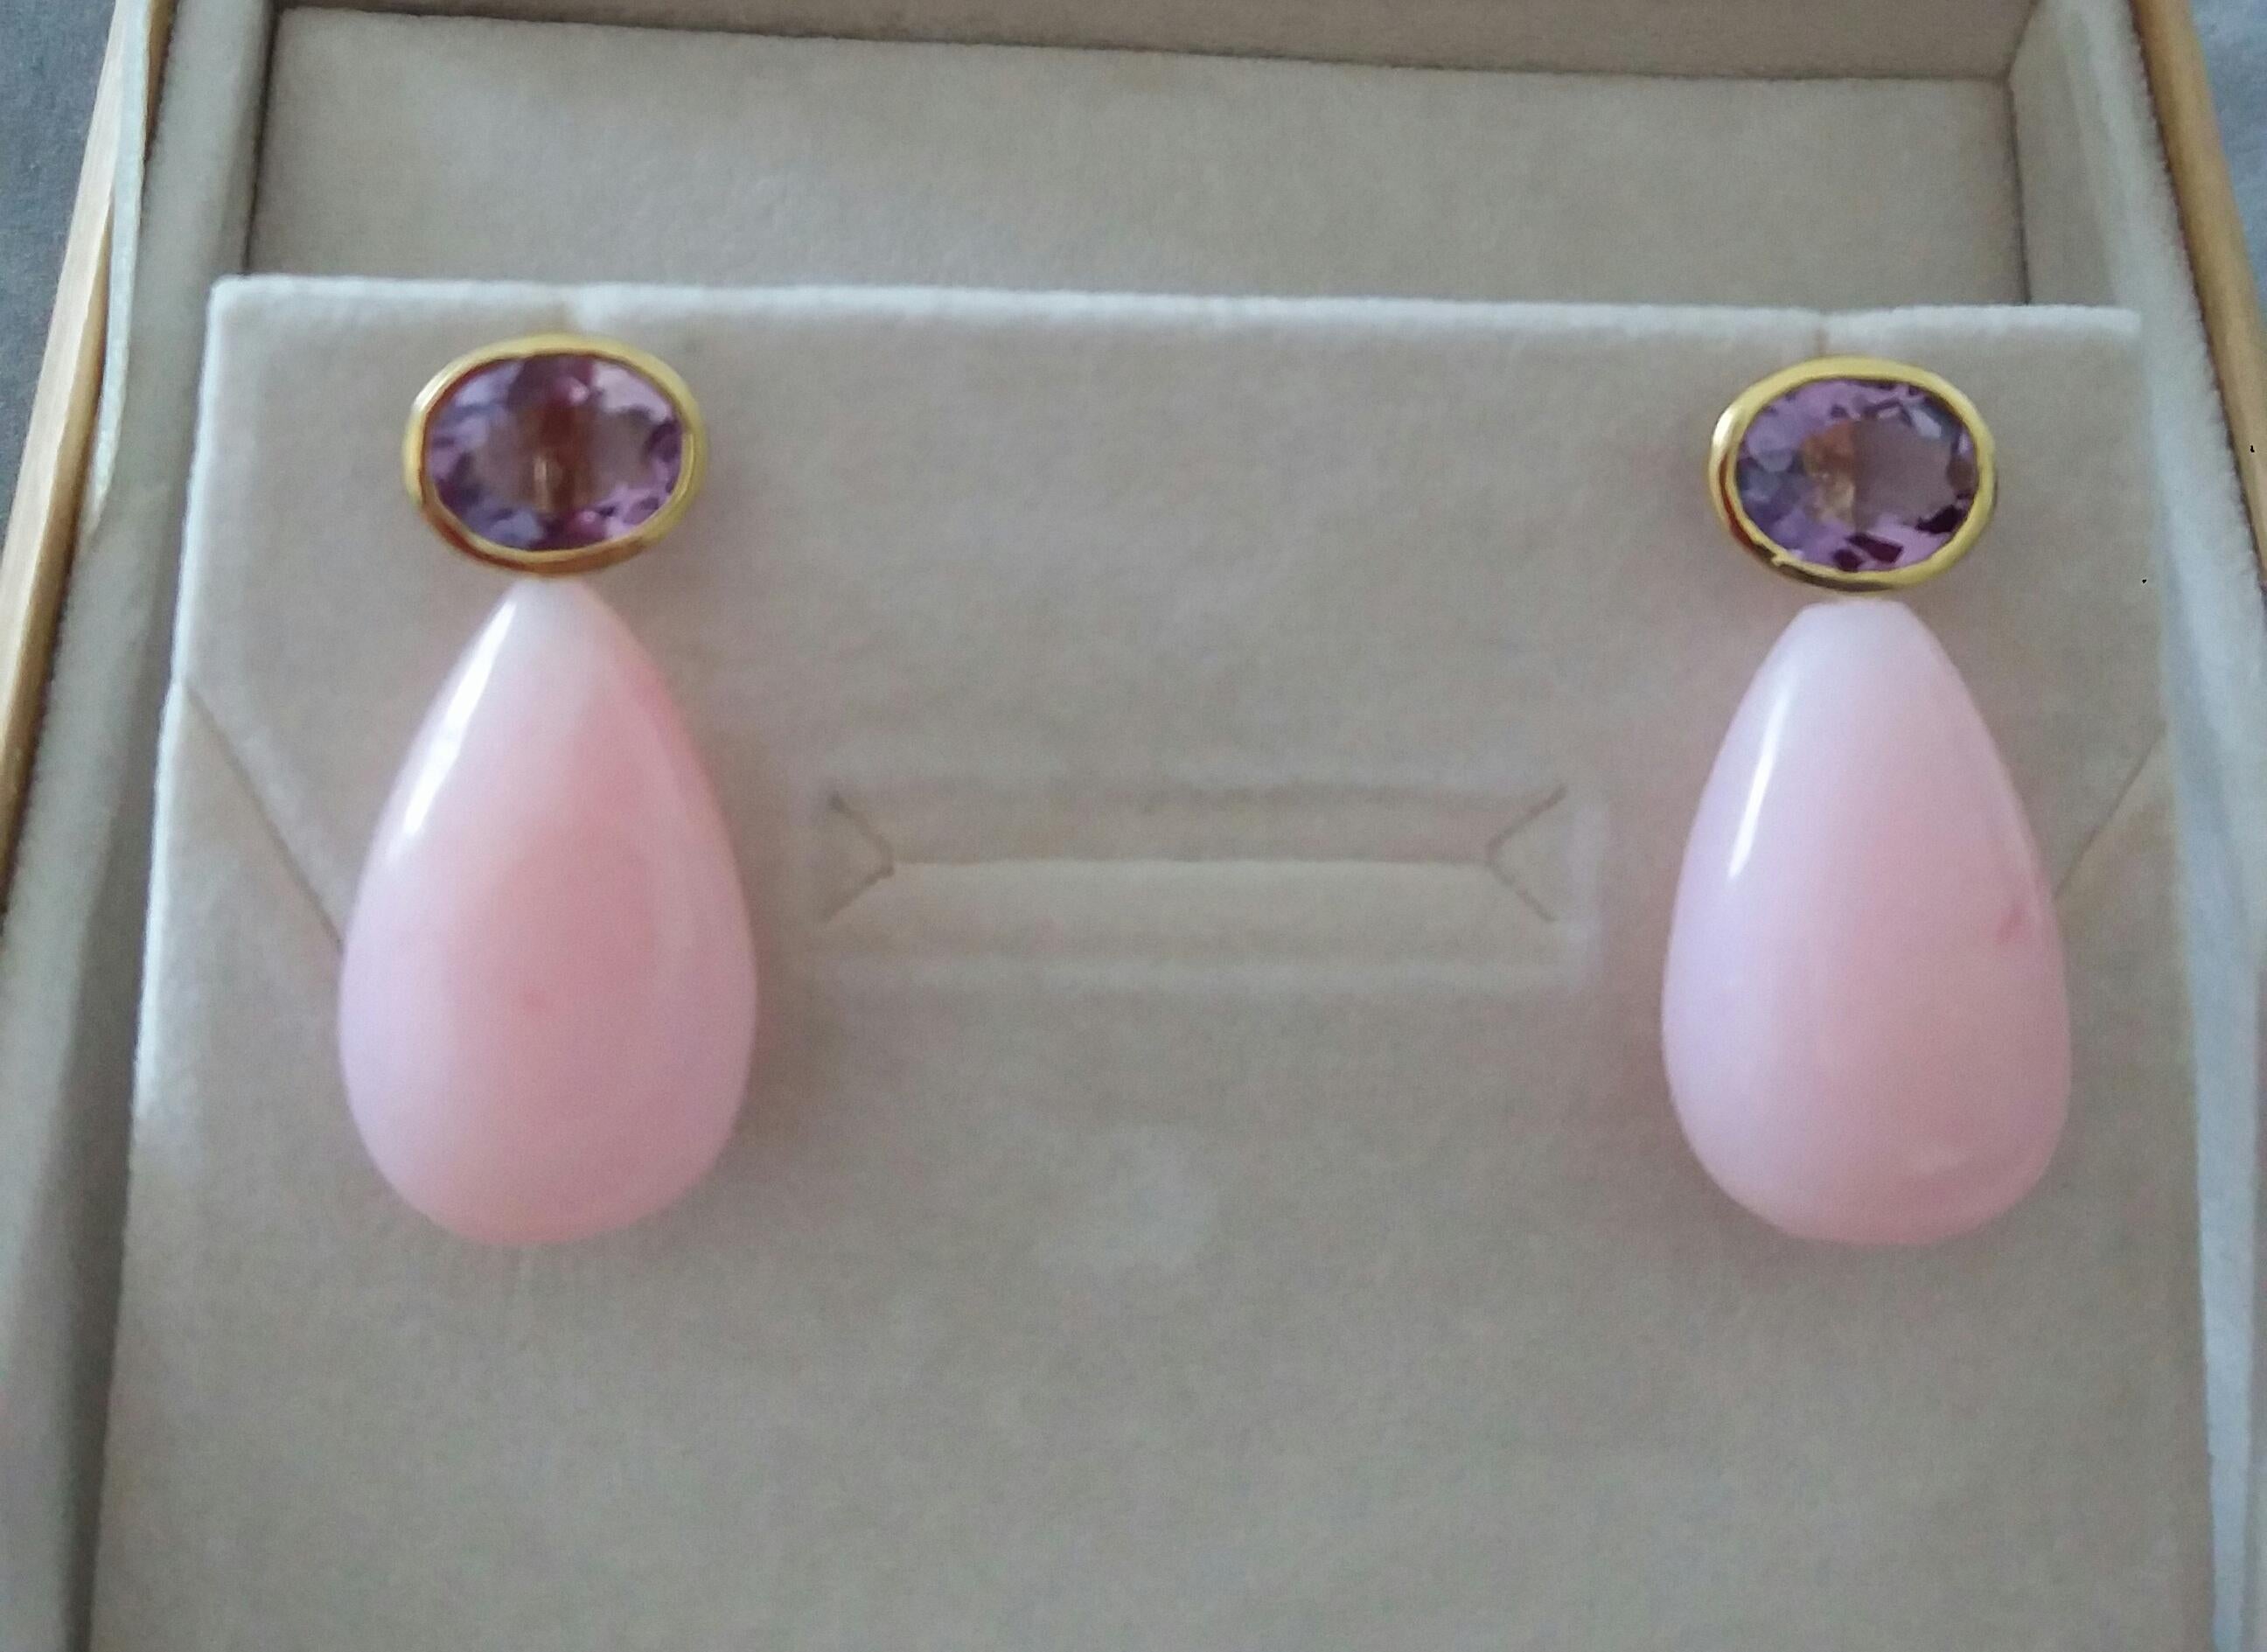 Diese einfachen, aber eleganten Ohrringe haben 2 facettierte, ovale natürliche Amethyste der Größe 8x10 mm, die in einer Gelbgoldfassung gefasst sind, an der 2 runde, schlichte rosa Opal-Tropfen der Größe 16 x 25 mm hängen.

1978 begann unser